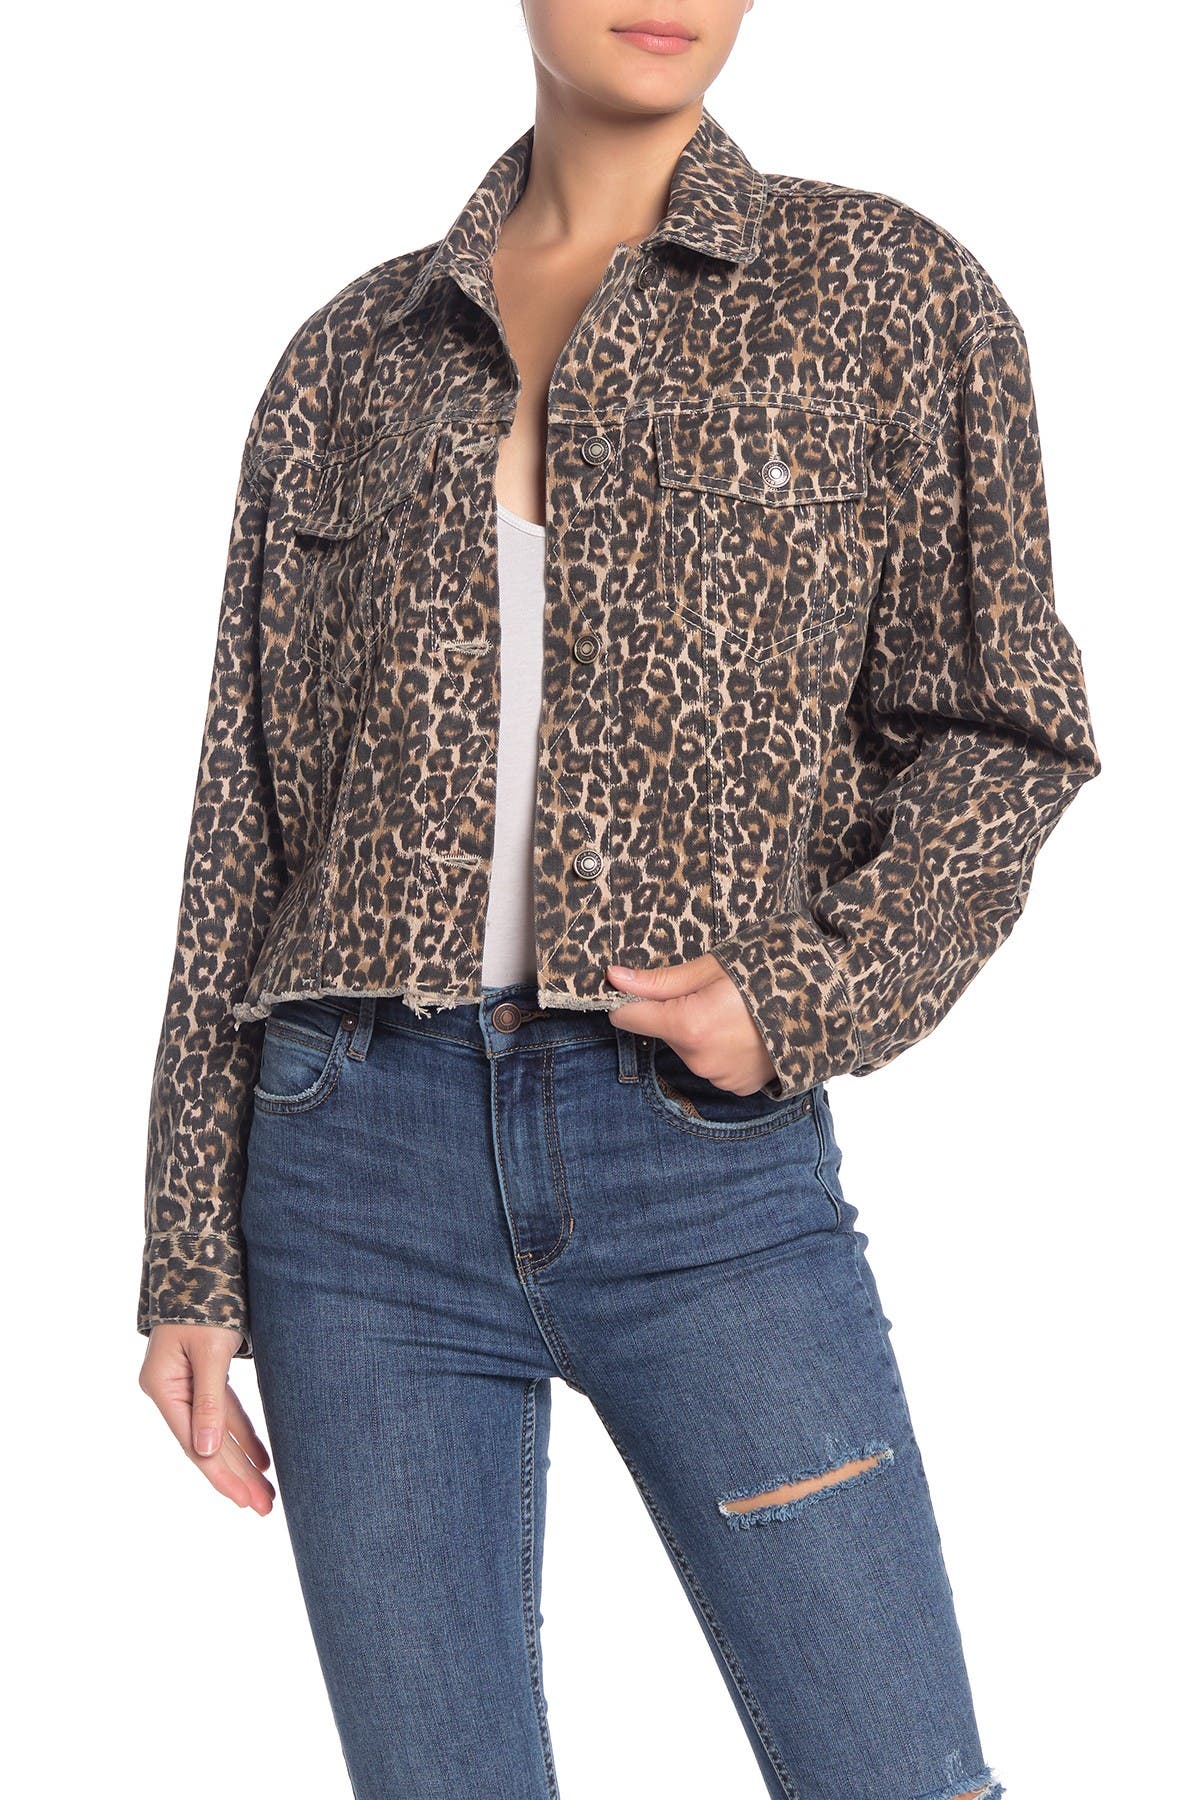 cheetah print denim jacket